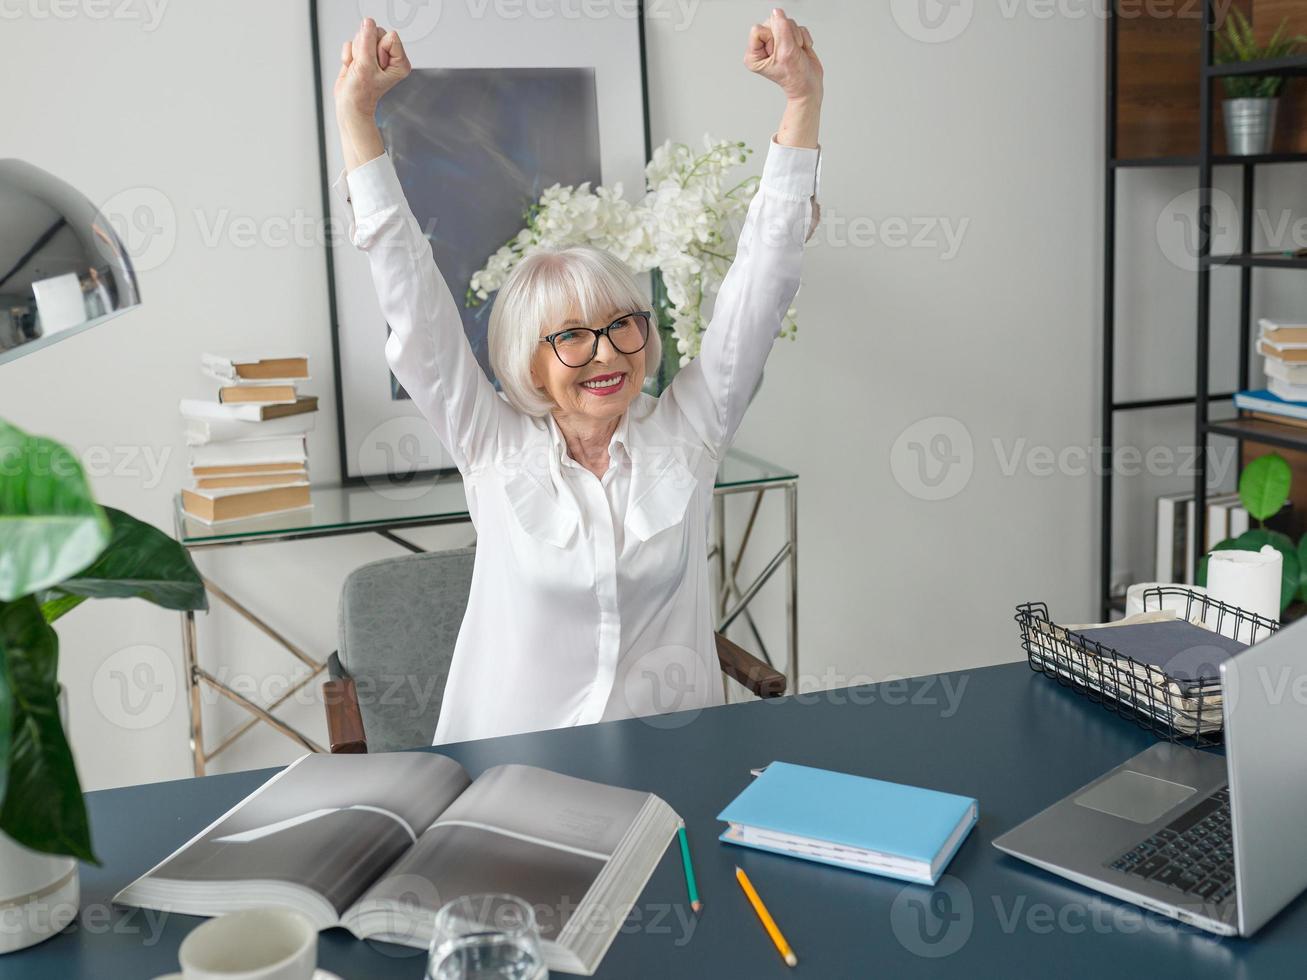 sênior linda mulher de cabelo grisalho na blusa branca feliz no escritório. trabalho, pessoas seniores, problemas, sucesso, encontrar uma solução, conceito de experiência foto